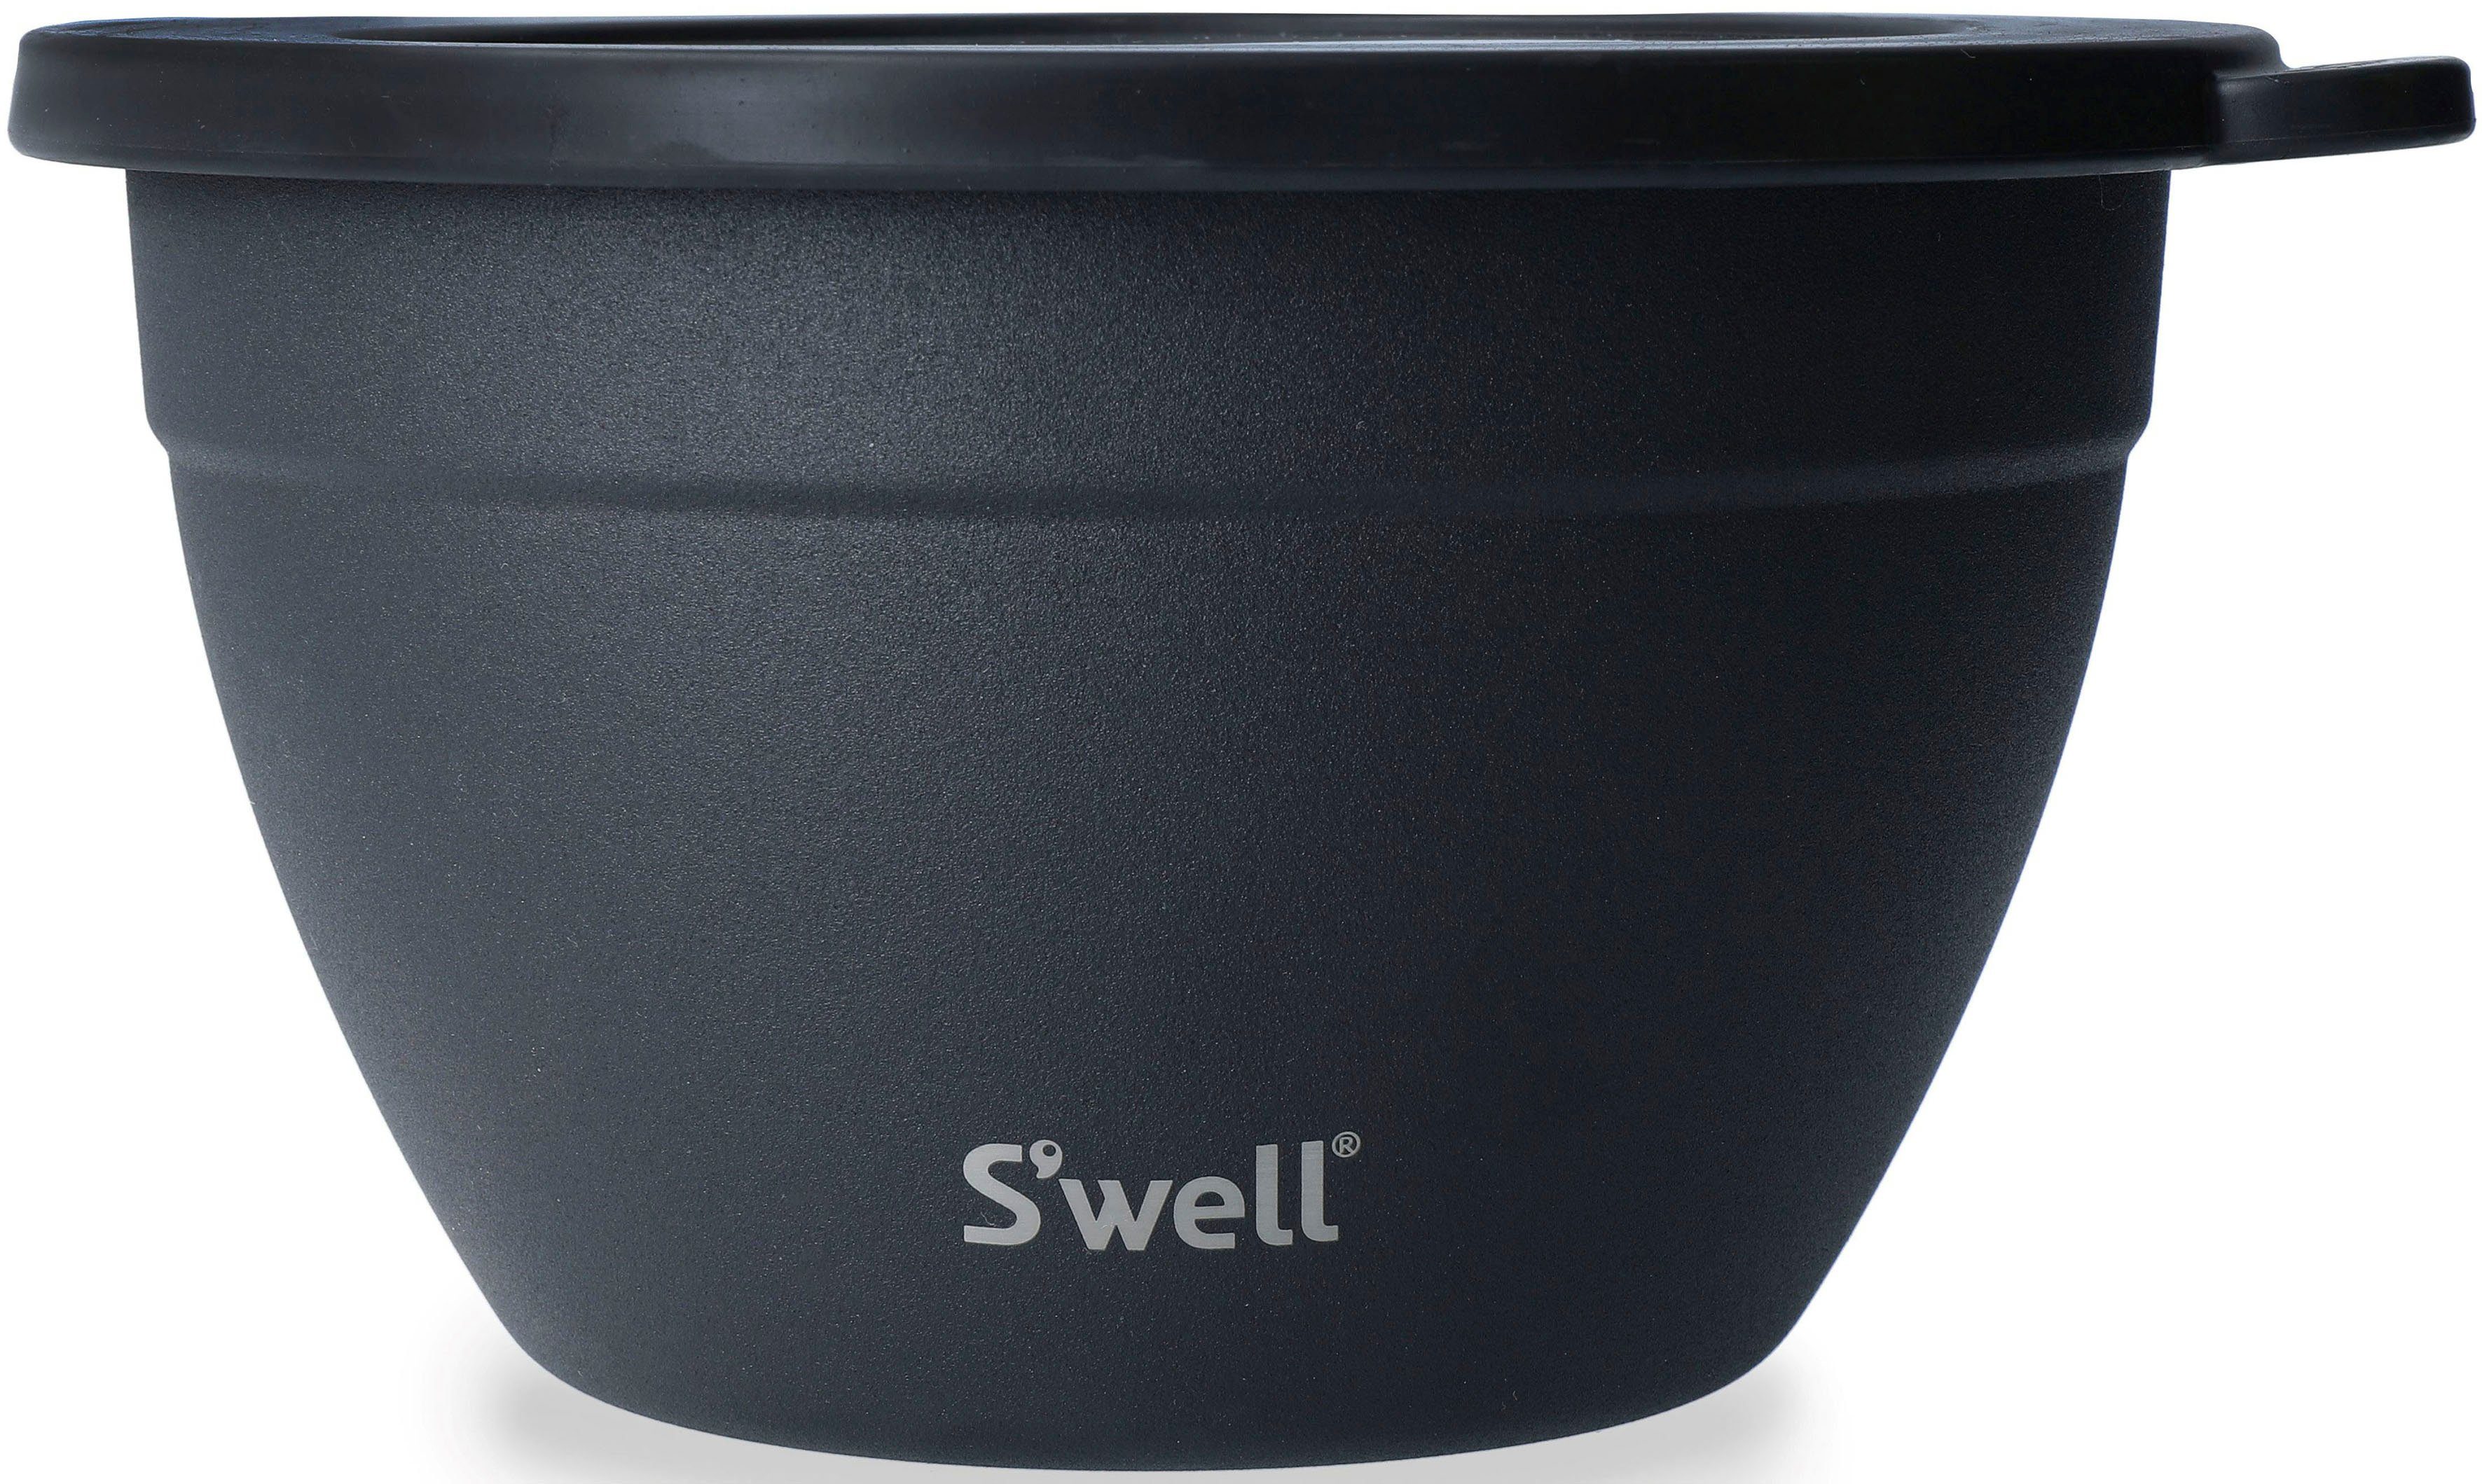 Salatschüssel Therma-S'well®-Technologie, Onyx Edelstahl, Schwarz Kit, 1.9L, Salad vakuumisolierten Außenschale Bowl S'well S'well (3-tlg),